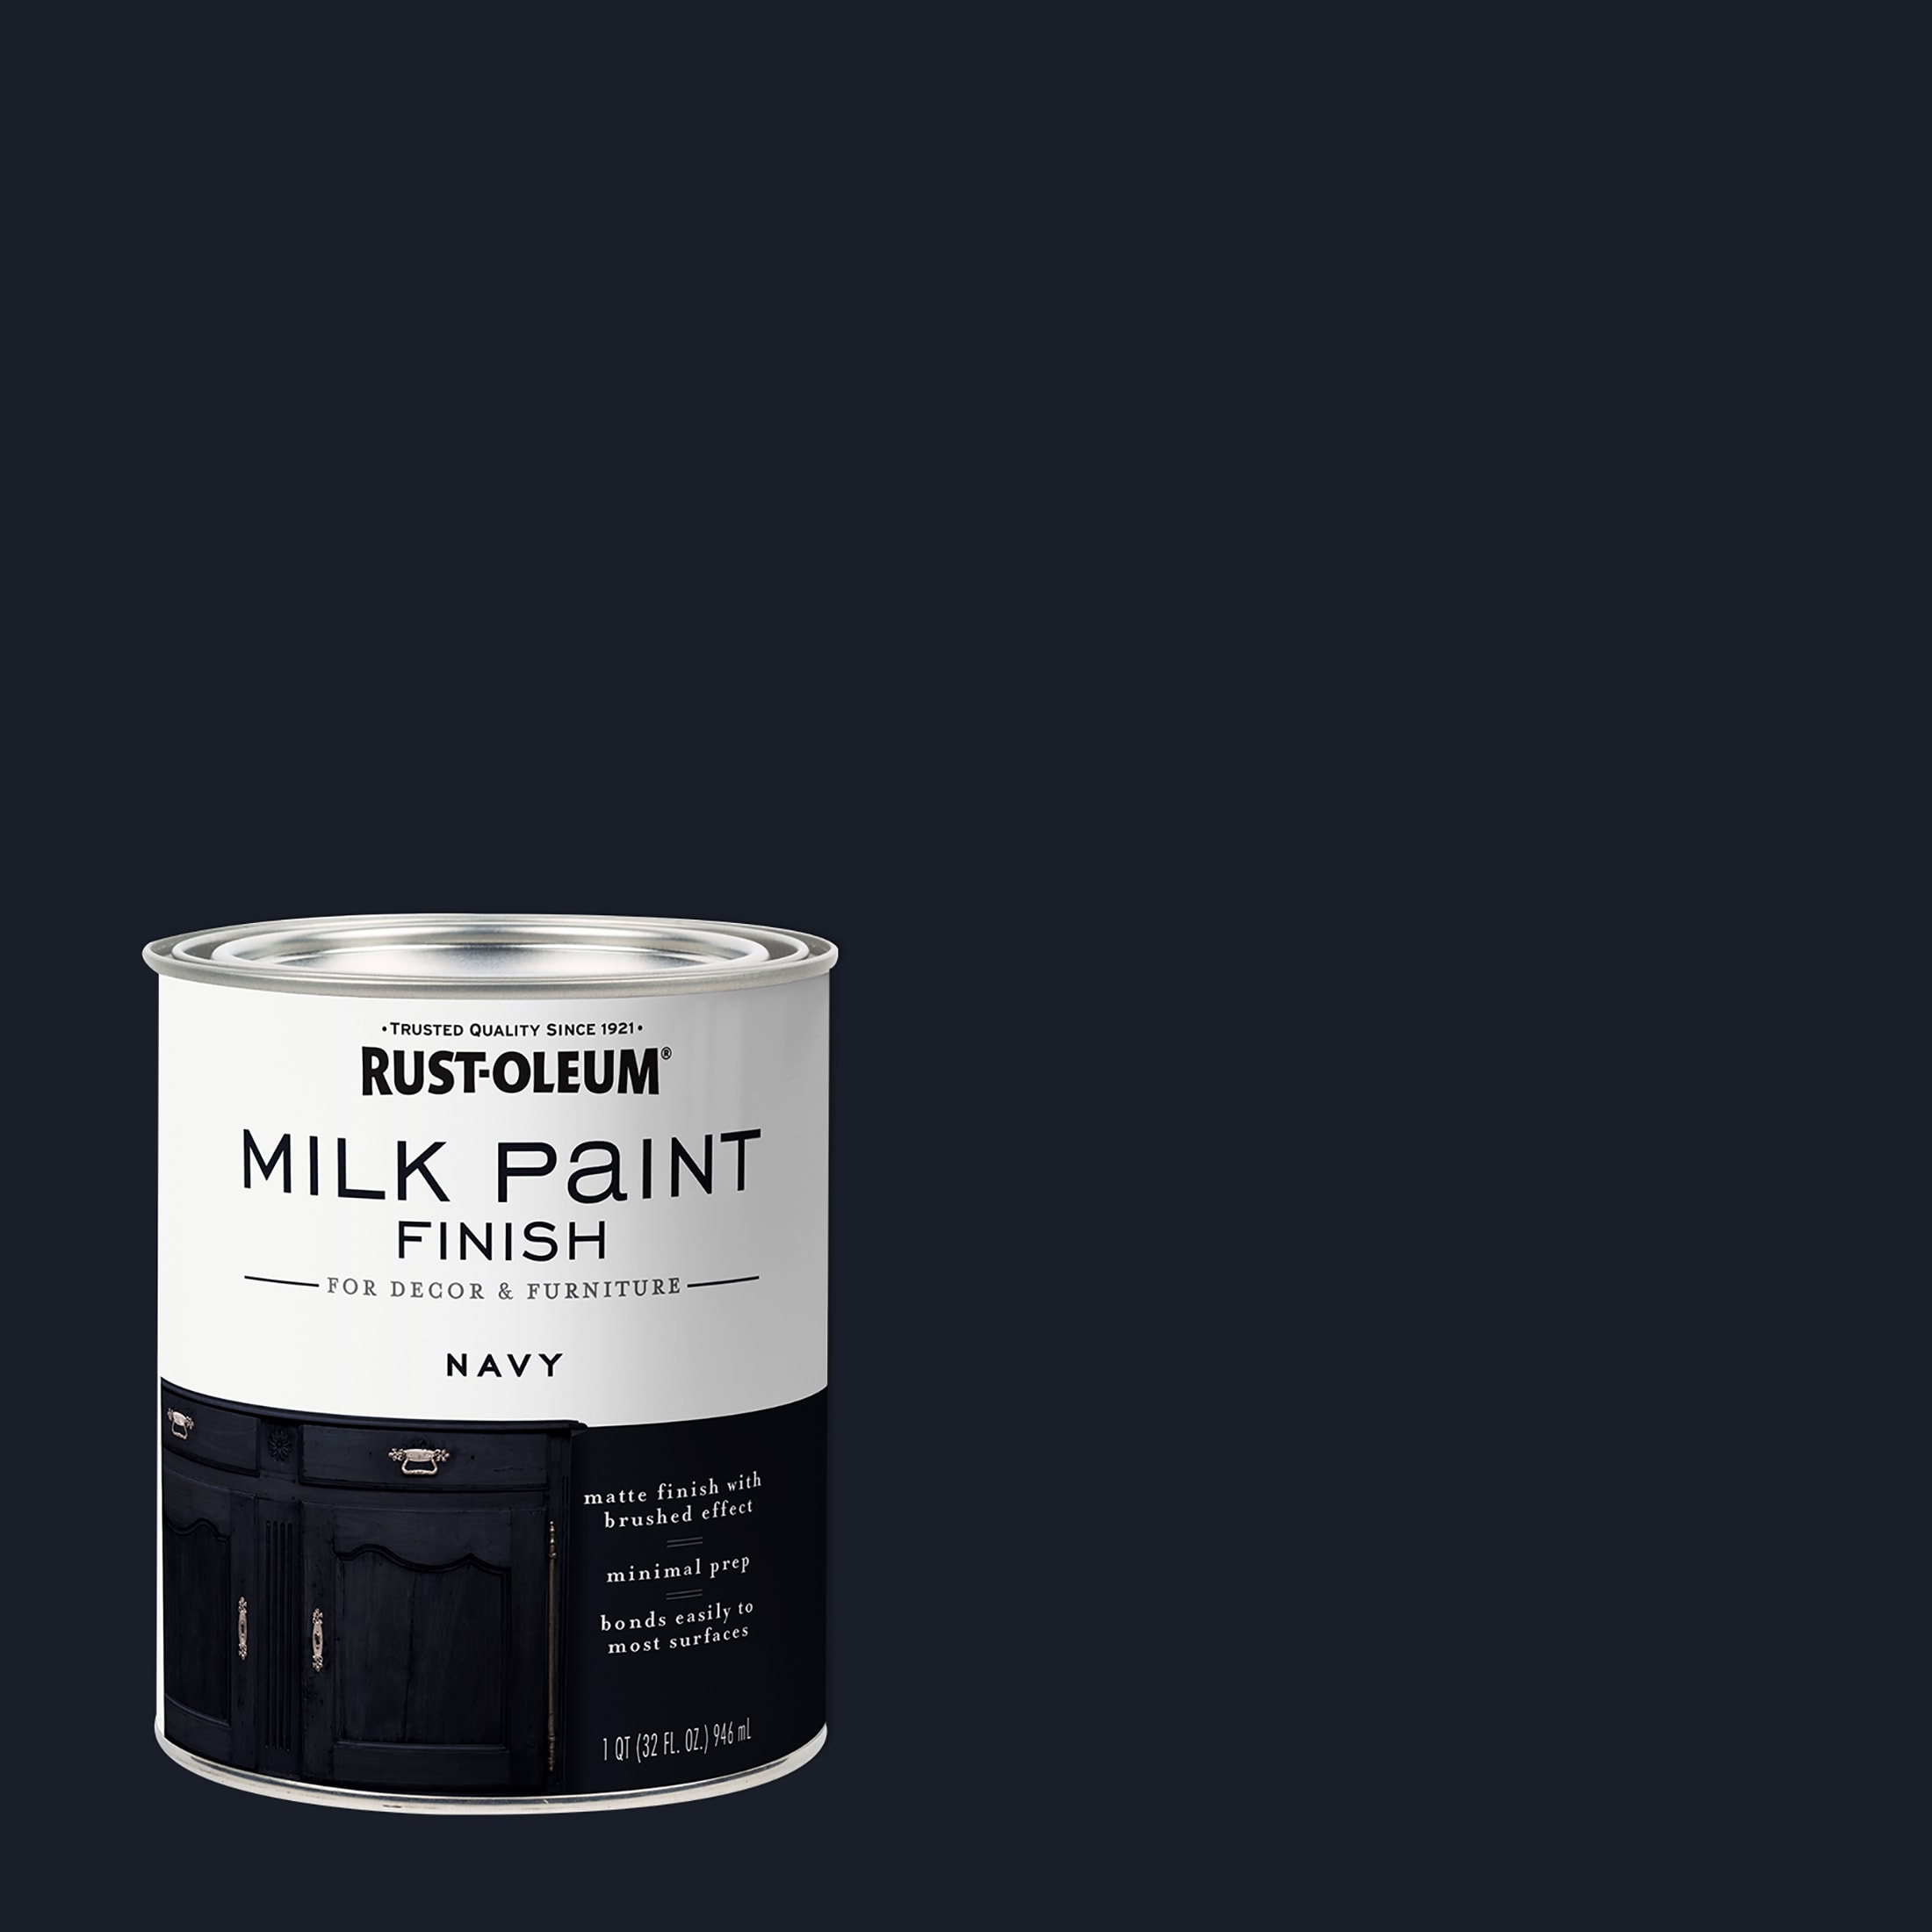 Rust-Oleum Classic White Acrylic Milk Paint (1-quart) in the Craft Paint  department at